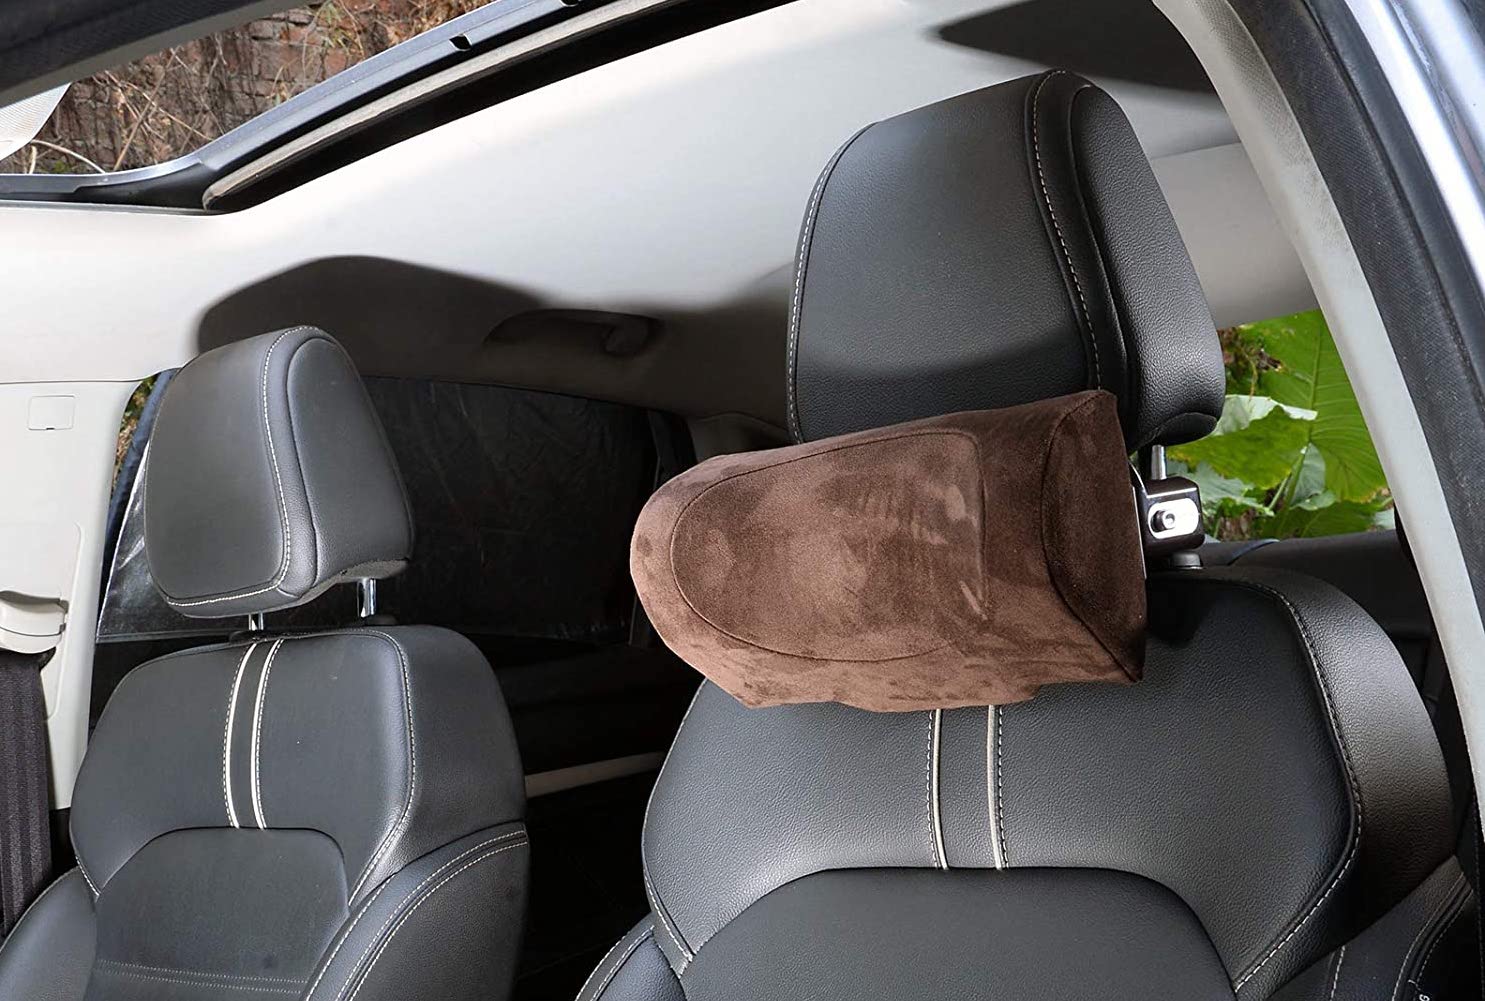 Top 10 Best Car Headrest Pillows